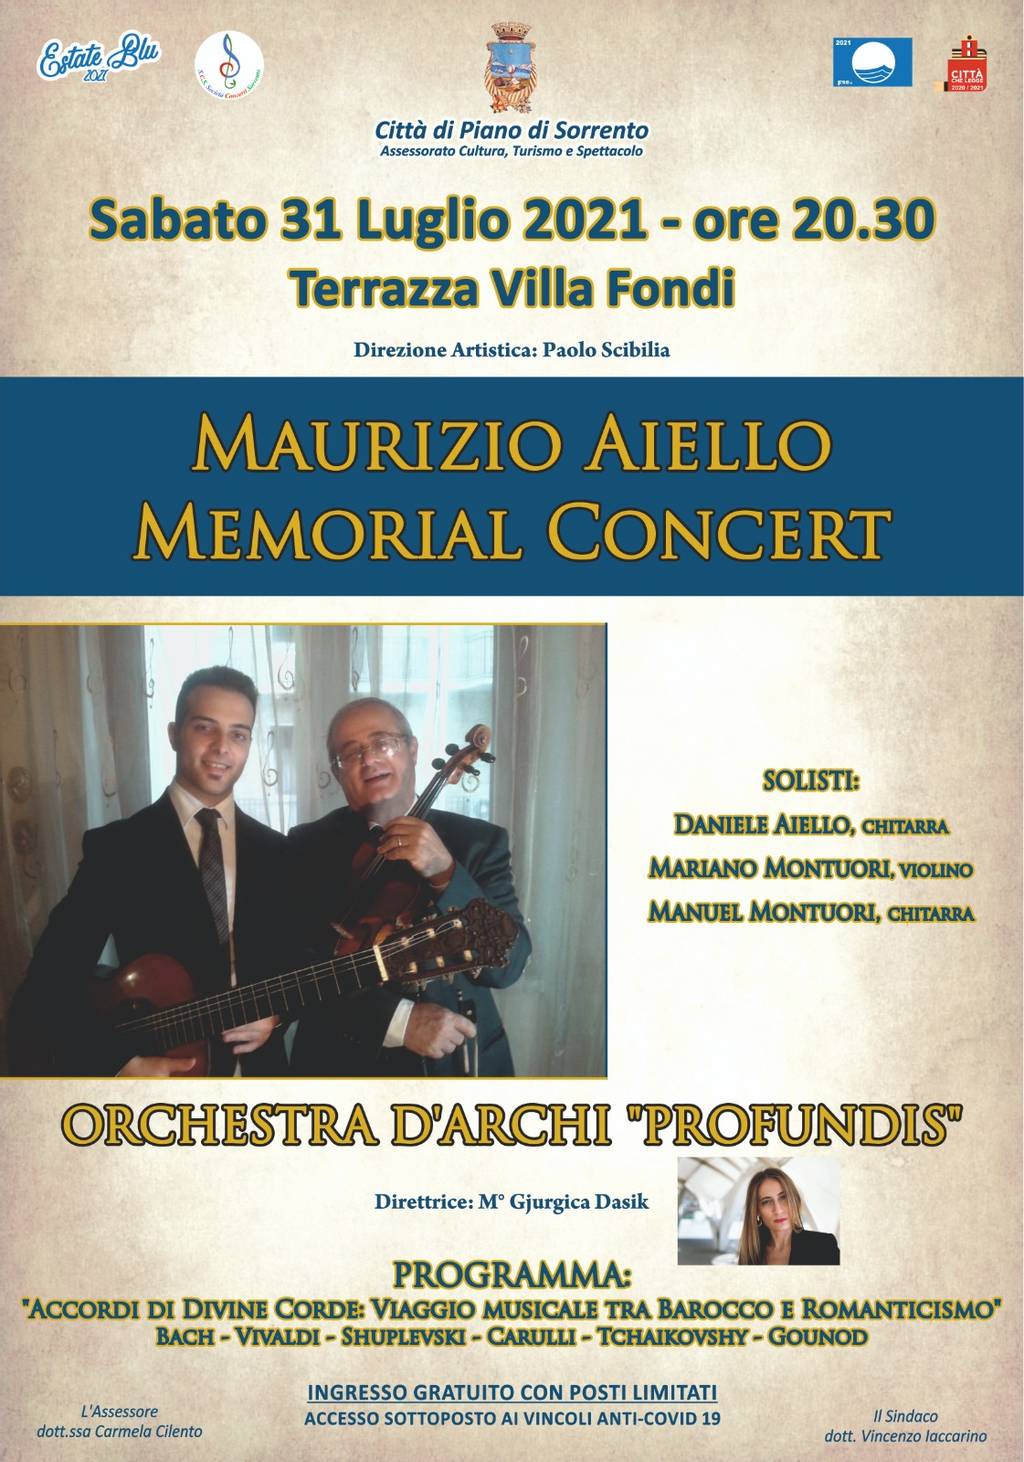 Maurizio Aiello Memorial Concert